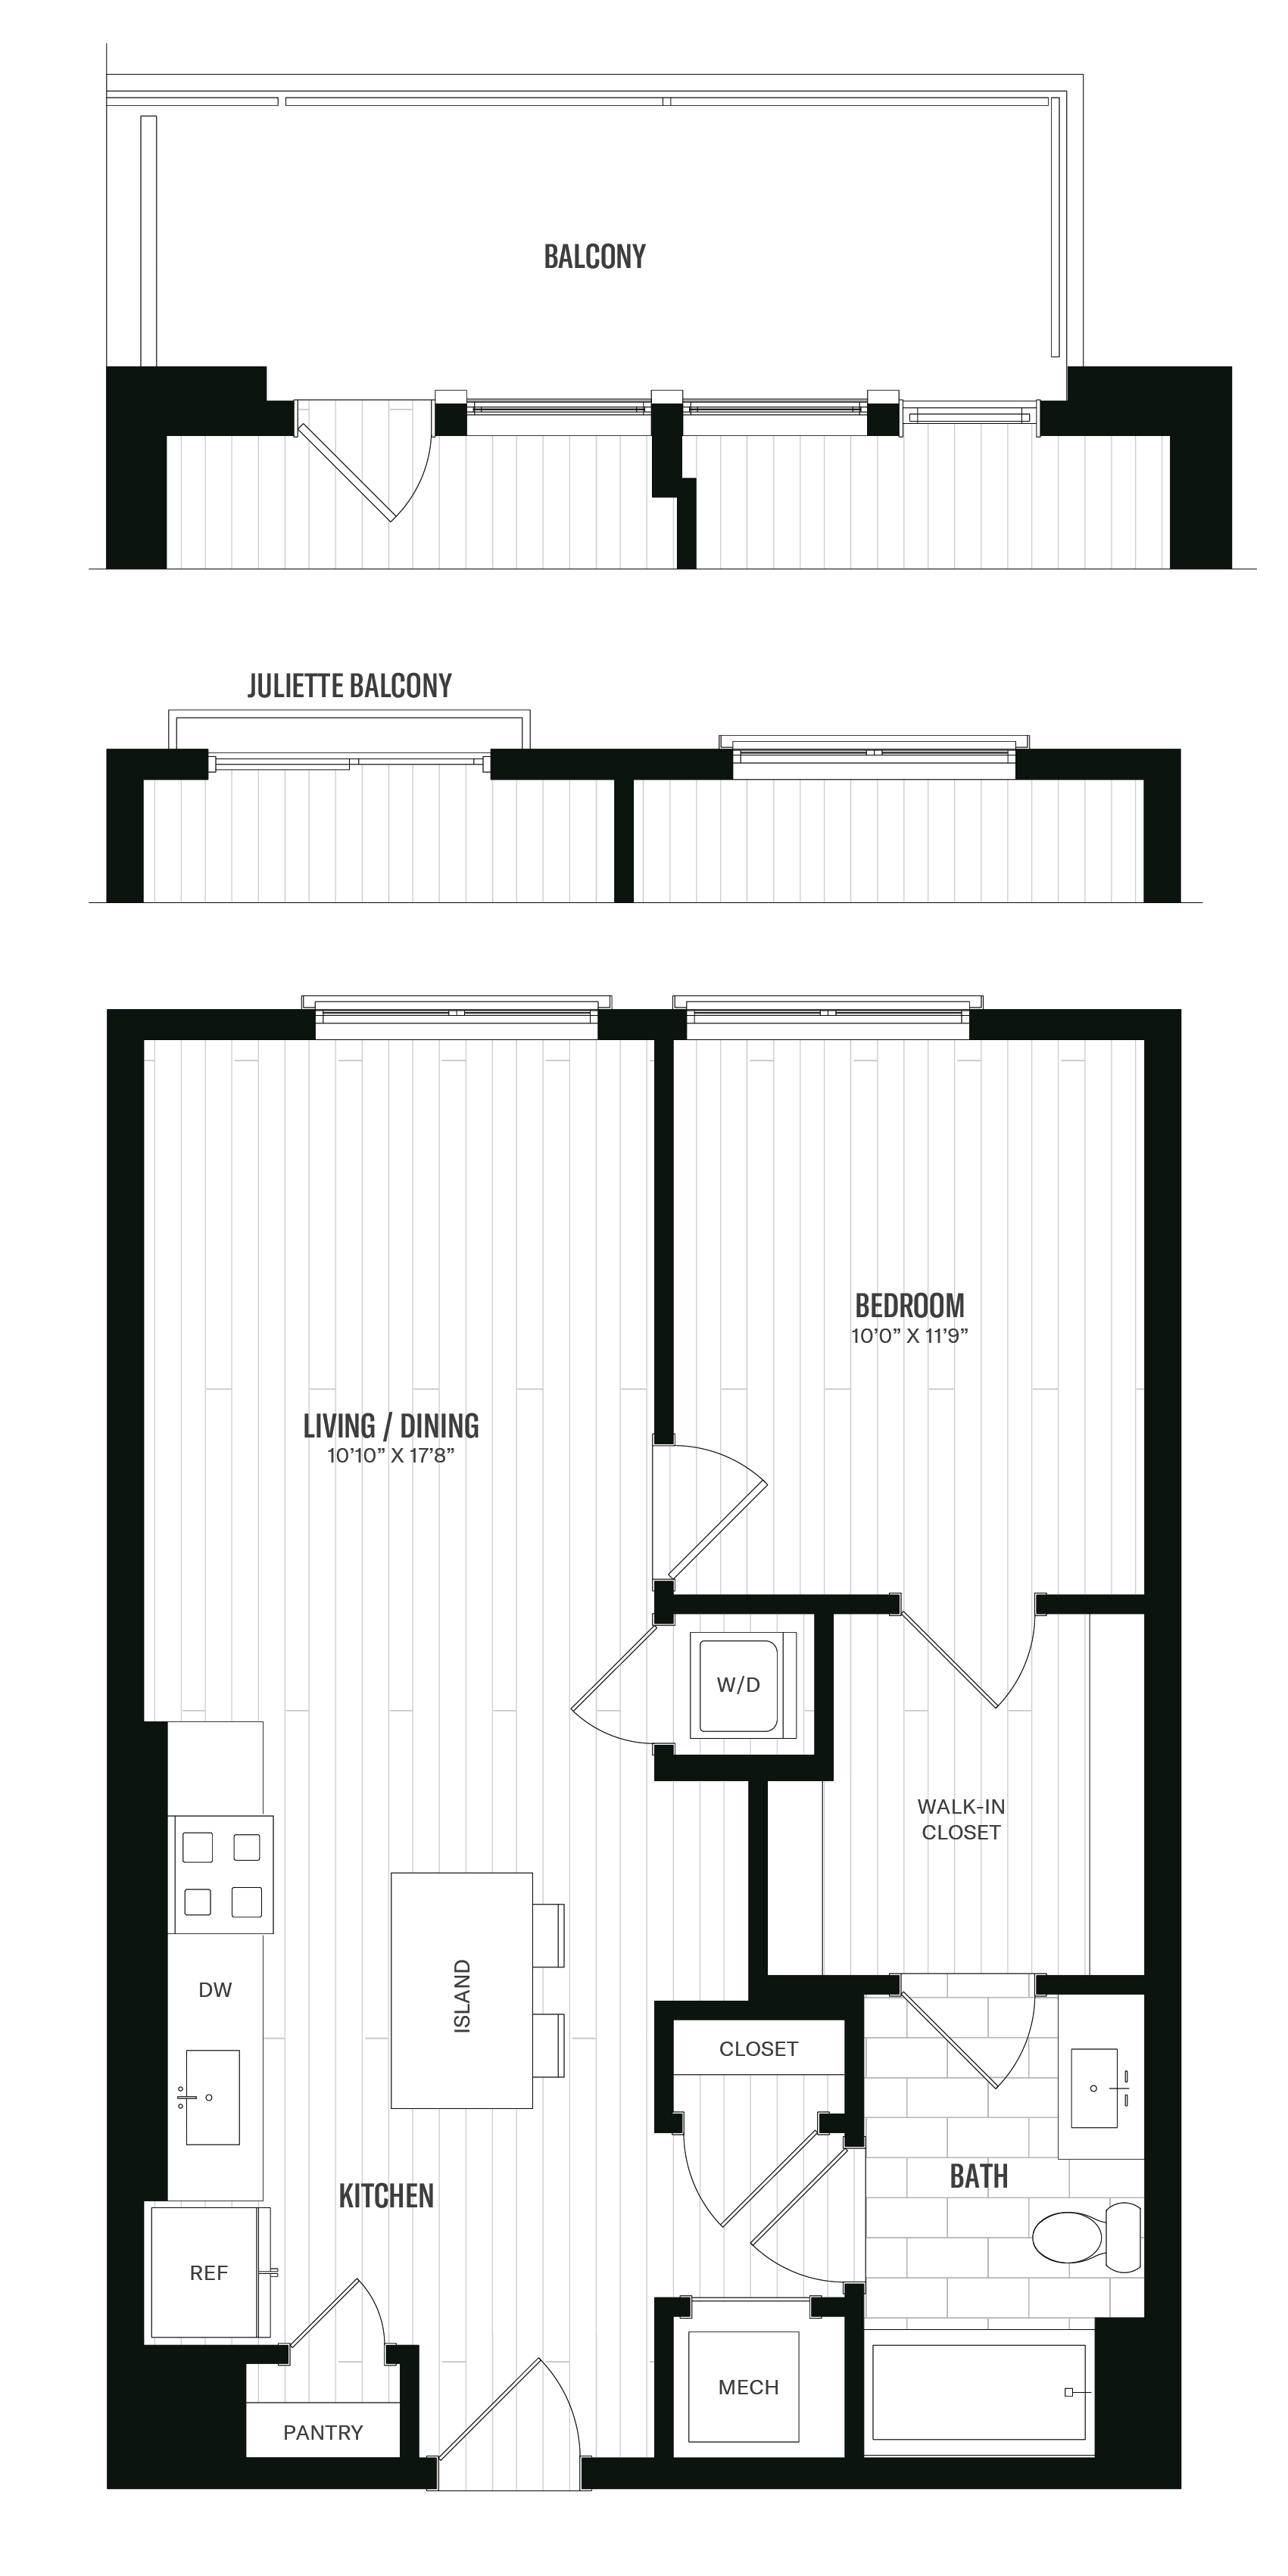 Floorplan image of unit 233